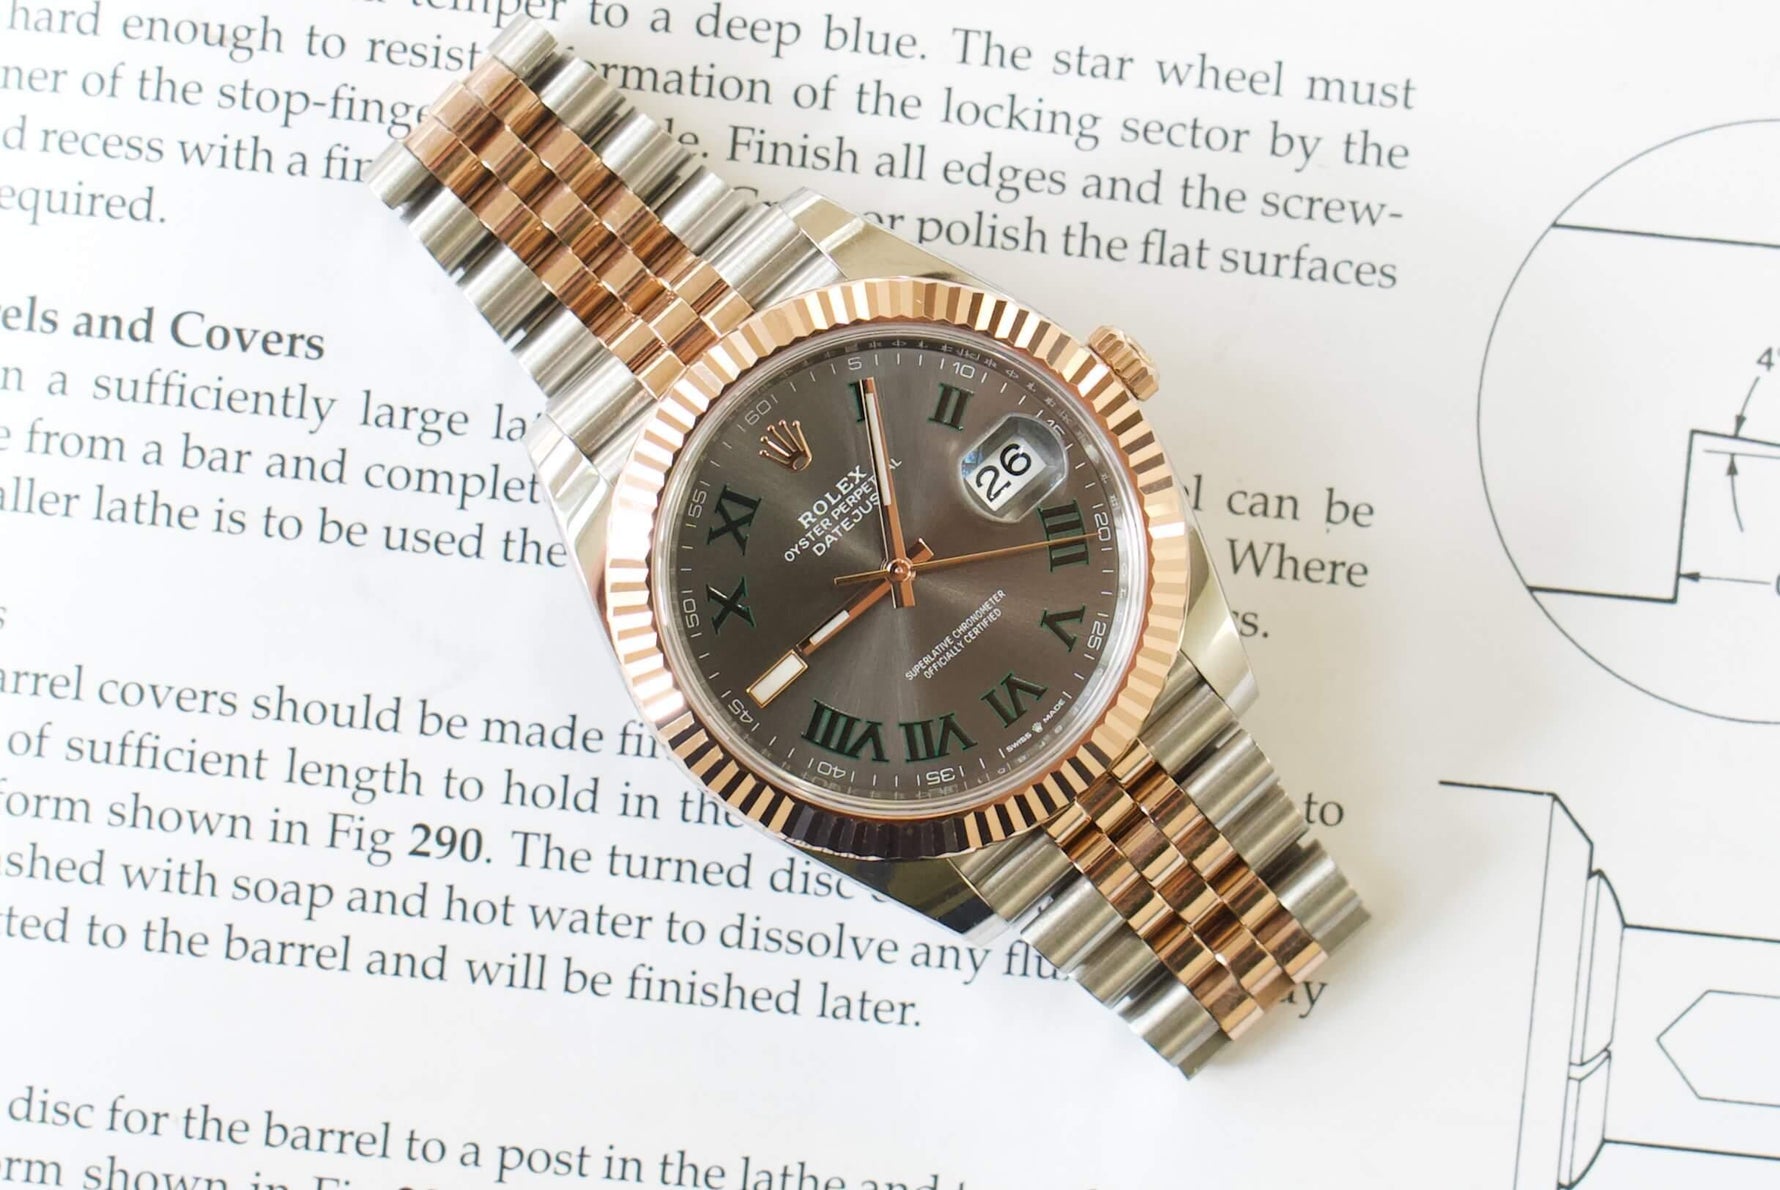 SOLDOUT: Rolex 126331 Datejust II Wimbeldon Two Tone Jubilee Steel Mens Watch 2021 Papers - WearingTime Luxury Watches